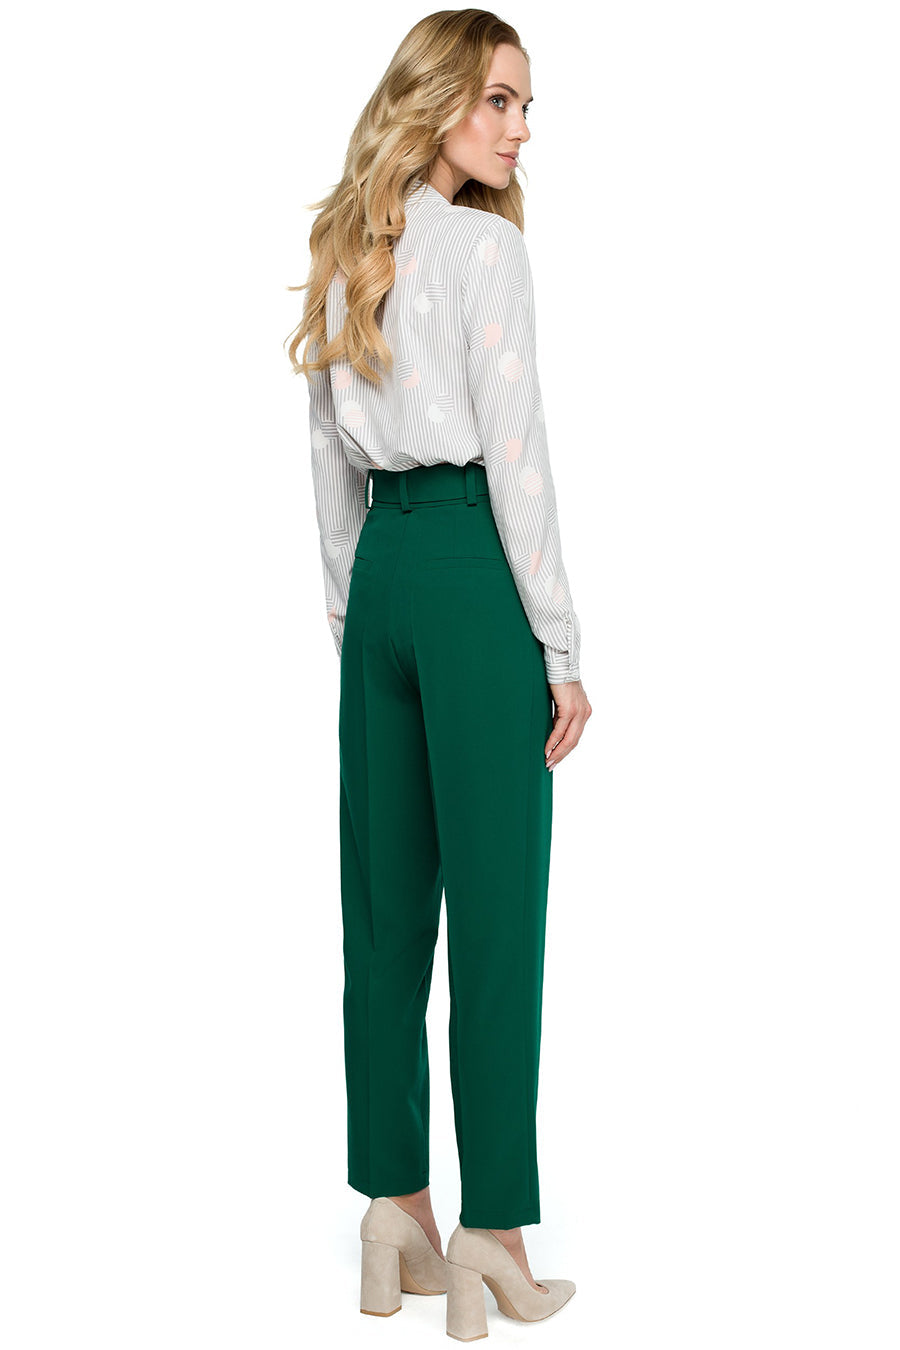 Γυναικείο παντελόνι Ardis, Πράσινο 2